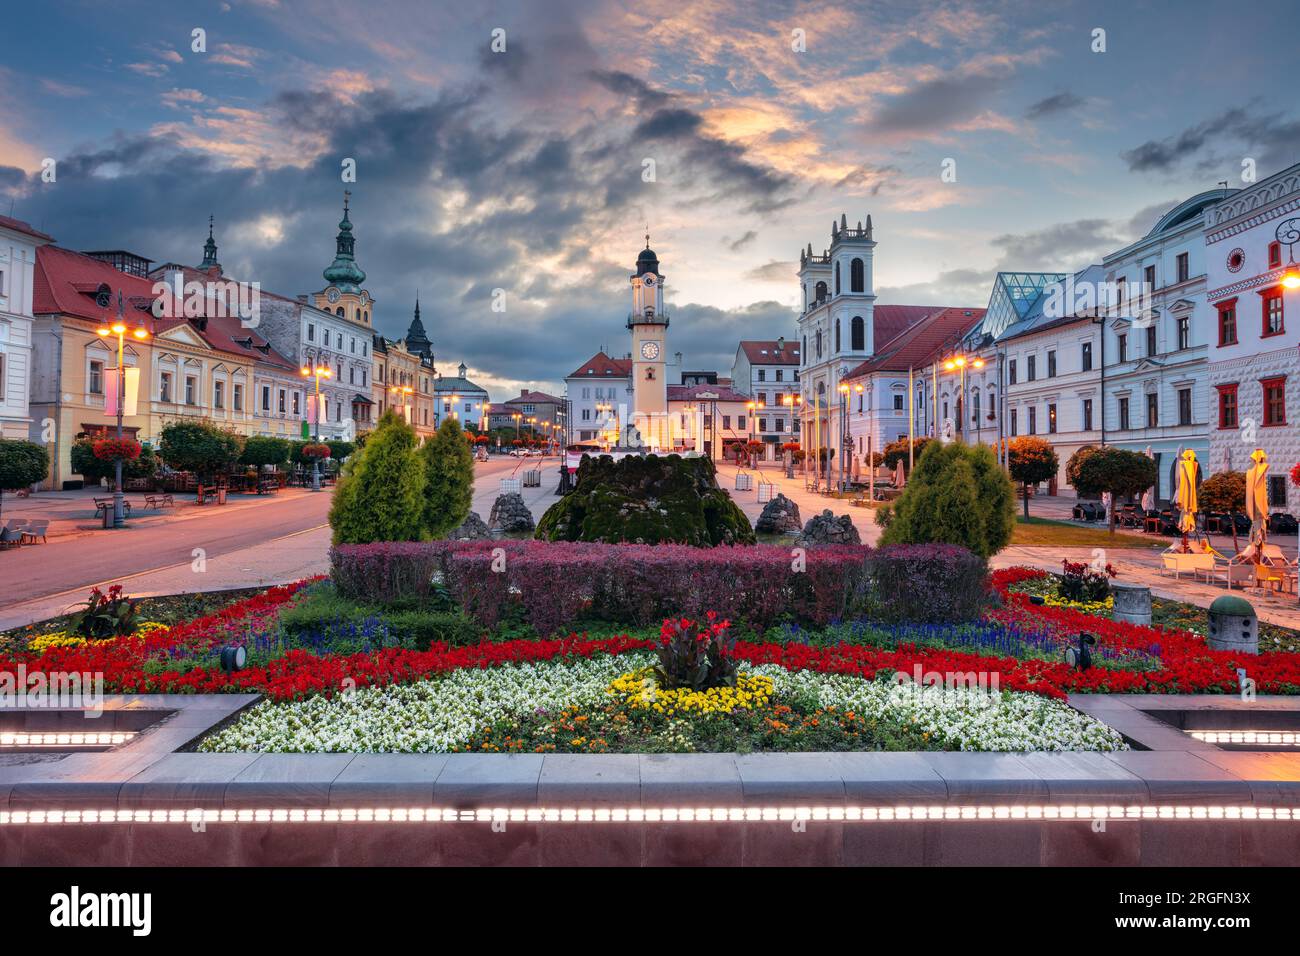 Banska Bystrica, Repubblica slovacca. Immagine del paesaggio urbano del centro di Banska Bystrica, in Slovacchia, con la piazza della rivolta nazionale slovacca all'alba d'estate. Foto Stock